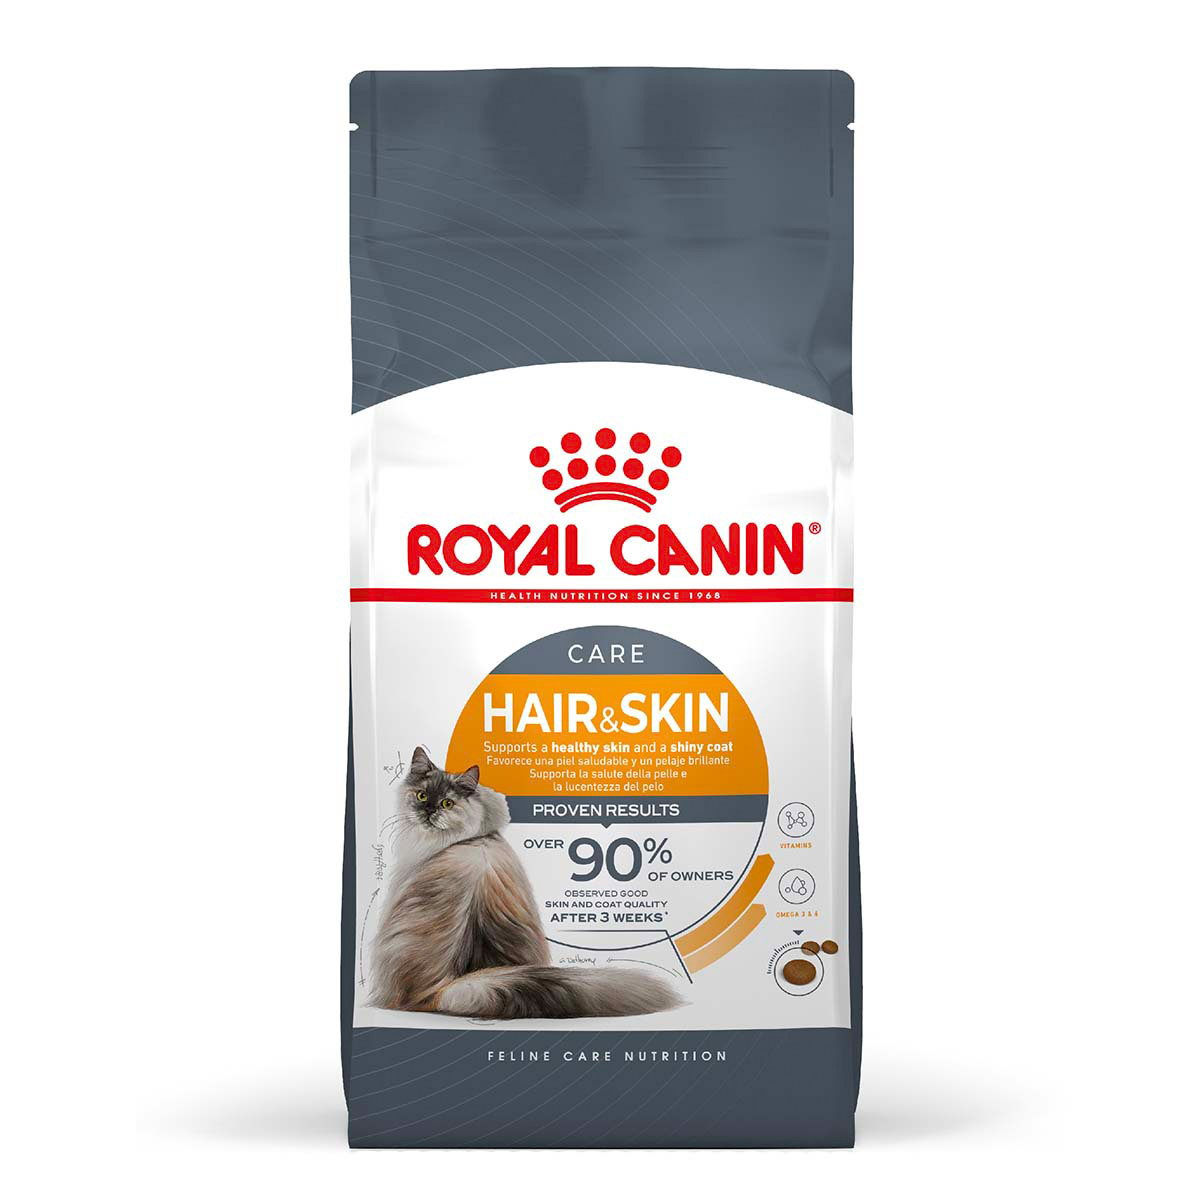 Royal Canin FCN Hair & Skin Care 4kg von Royal Canin